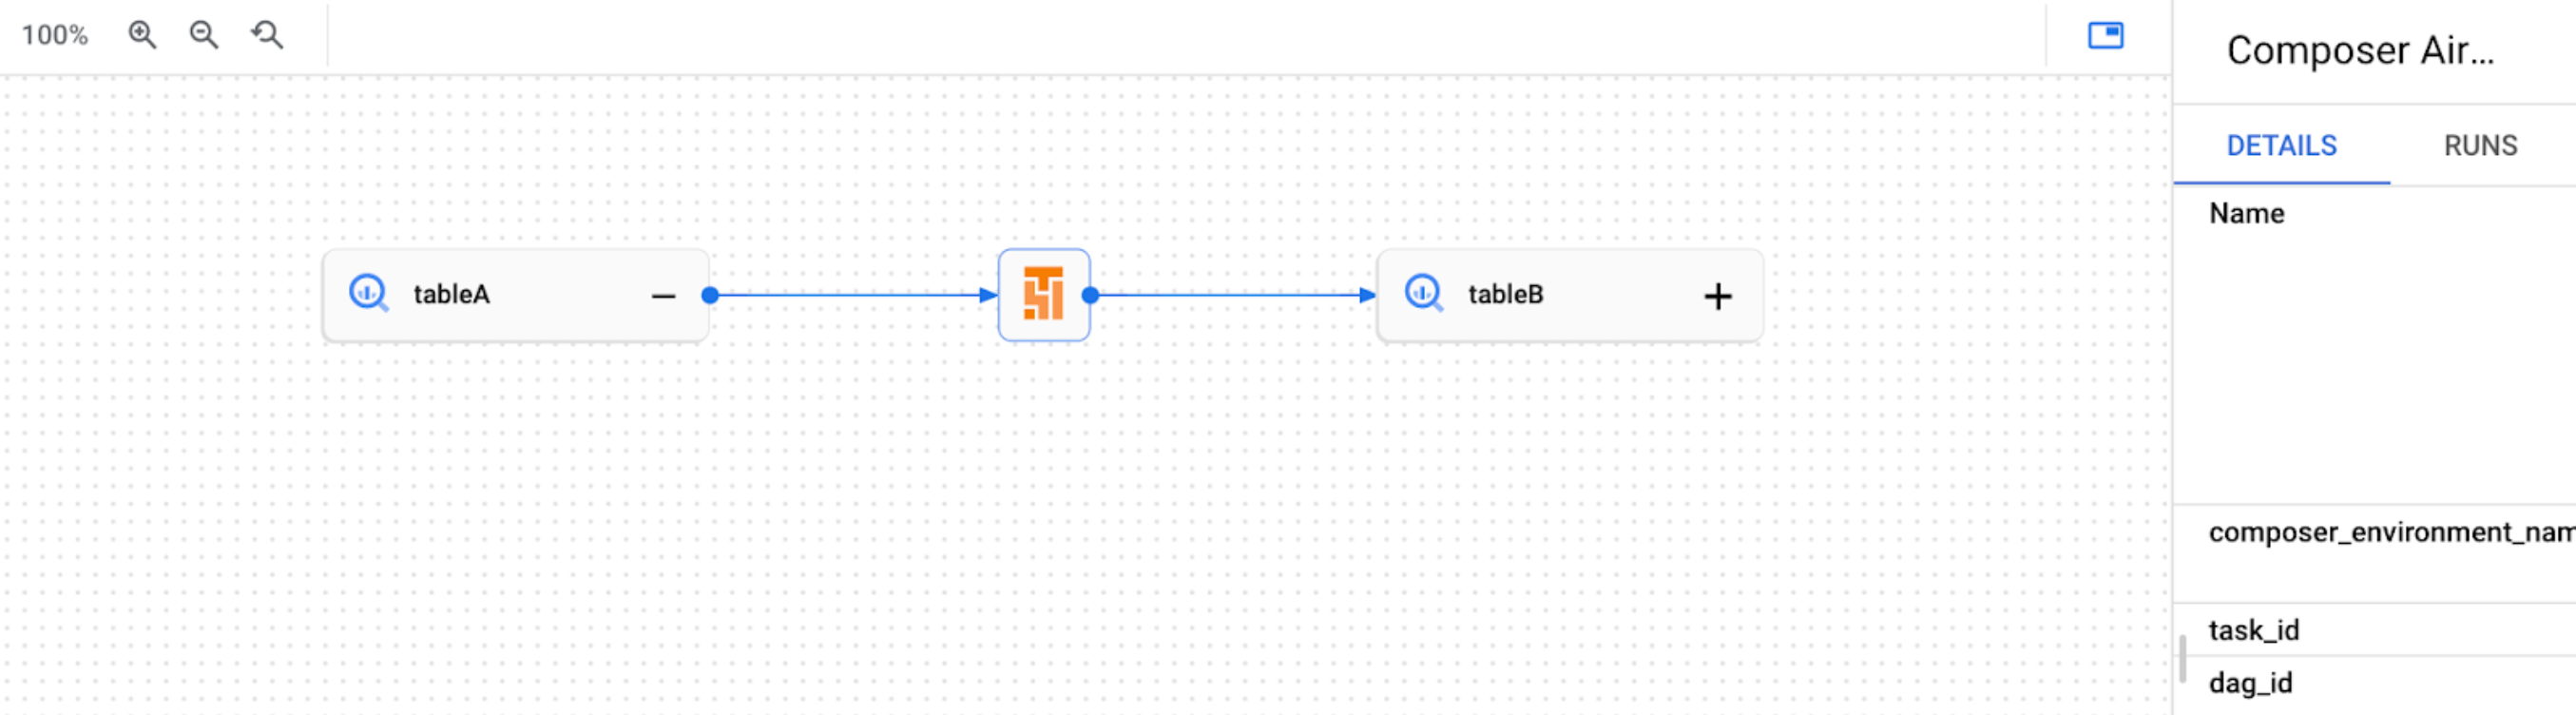 Exemple de graphique de traçabilité dans l'interface utilisateur de Dataplex